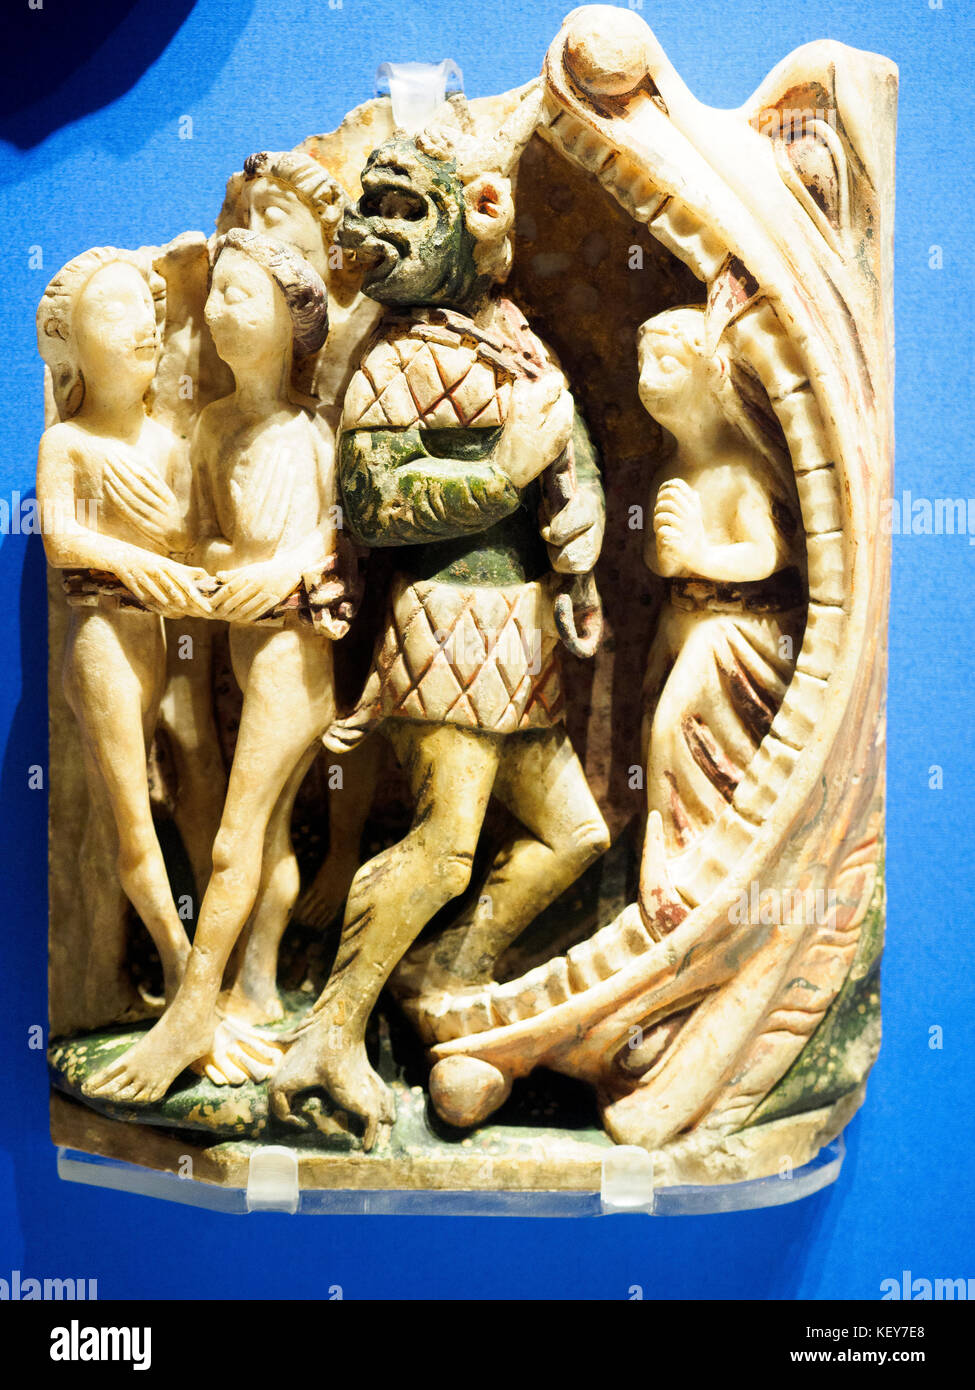 Il peccato e la salvezza del pannello con scena del giudizio ultimo satana trascina le anime dei dannati nelle ganasce dell'inferno circa 1400-25 Inghilterra in alabastro del British Museum - Londra, Inghilterra Foto Stock